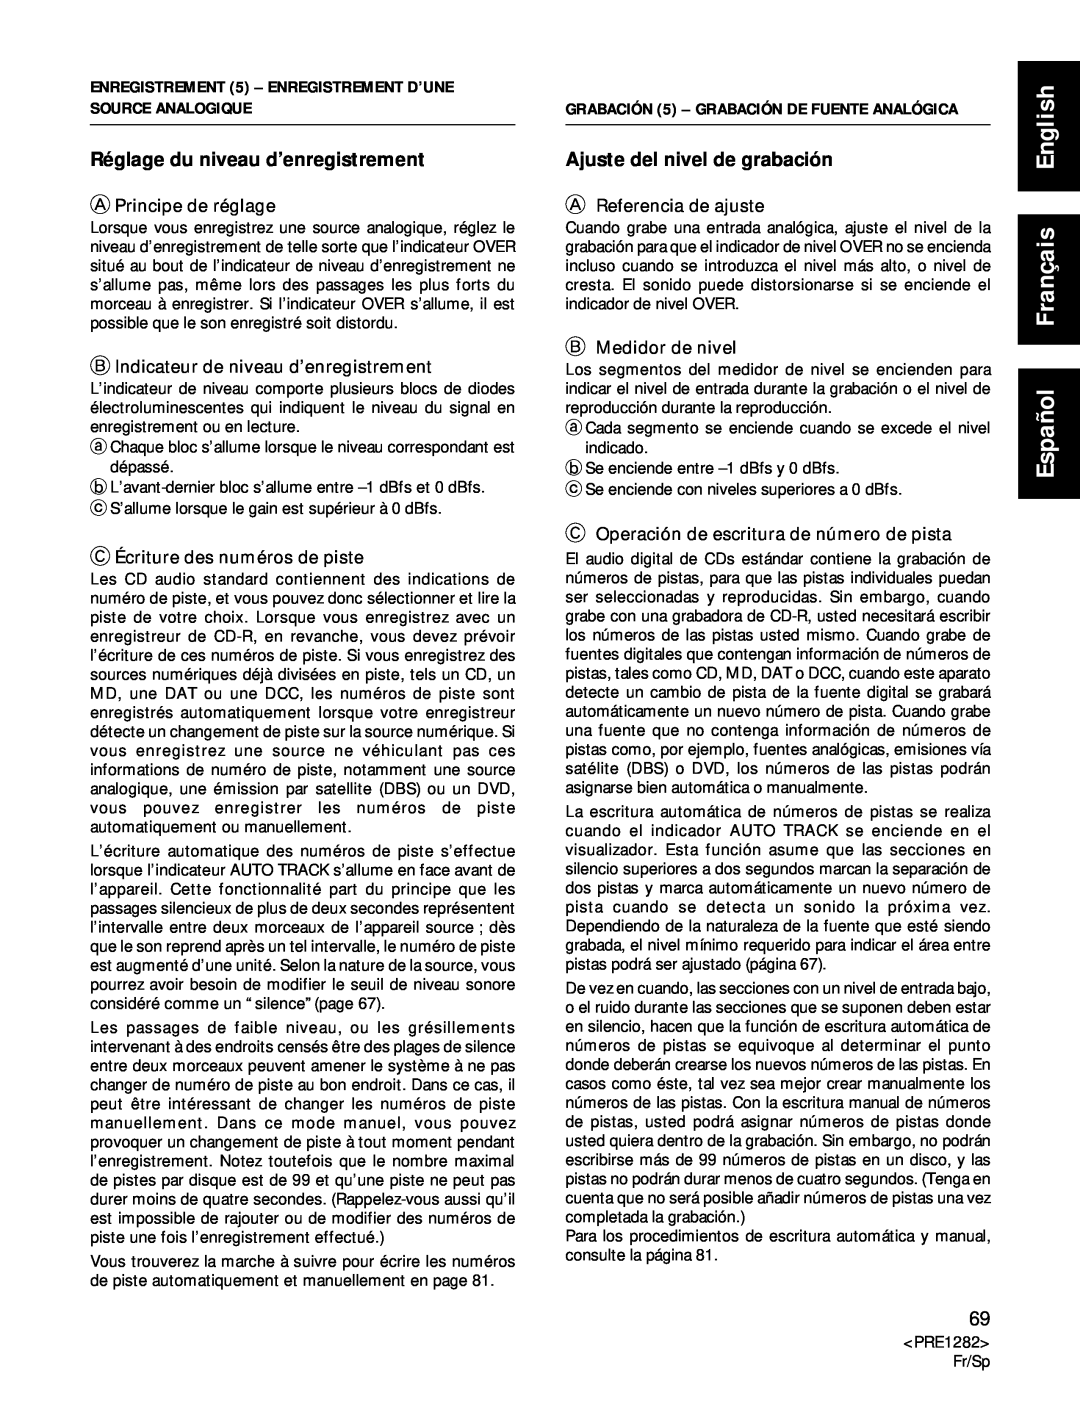 Americana Appliances CDR-850 Español Français English, Réglage du niveau d’enregistrement, Ajuste del nivel de grabación 